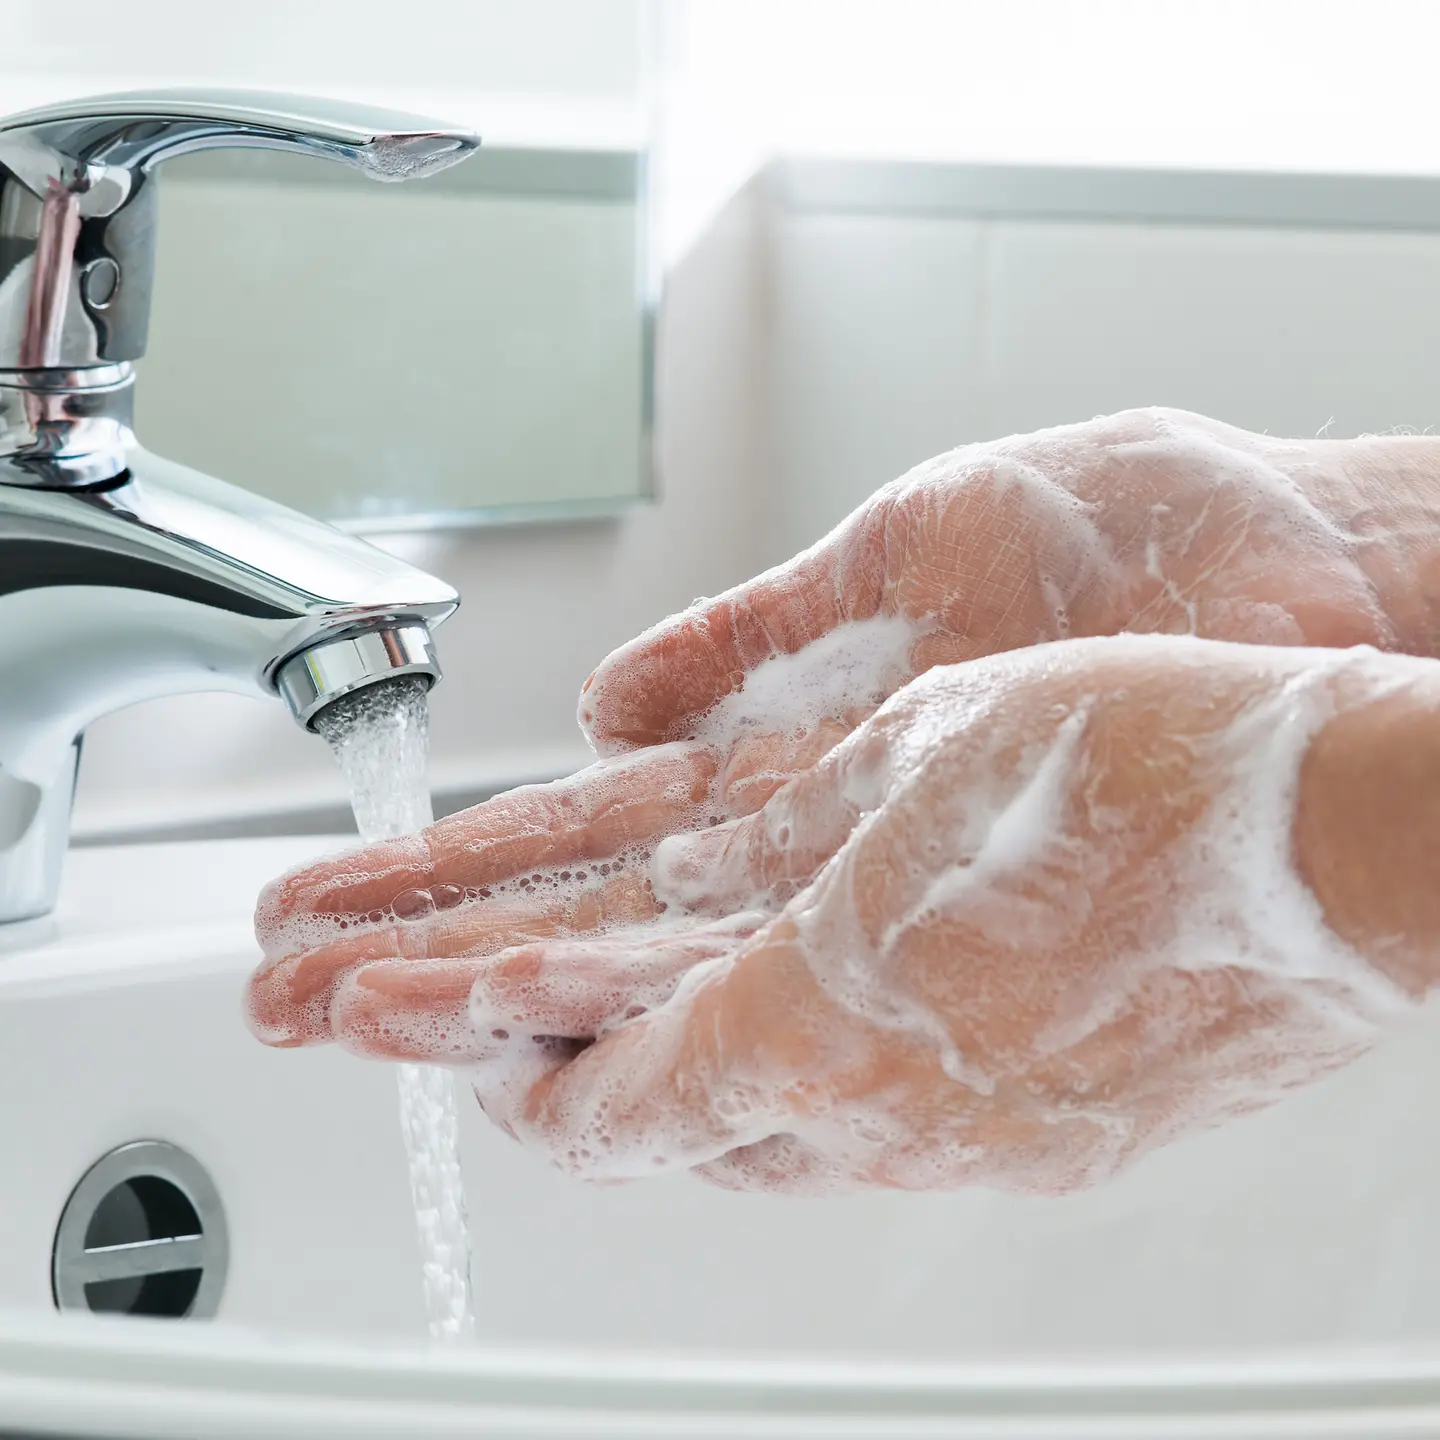 Zu sehen ist, wie Hände mit viel Seife unter fließendem Wasser gewaschen werden